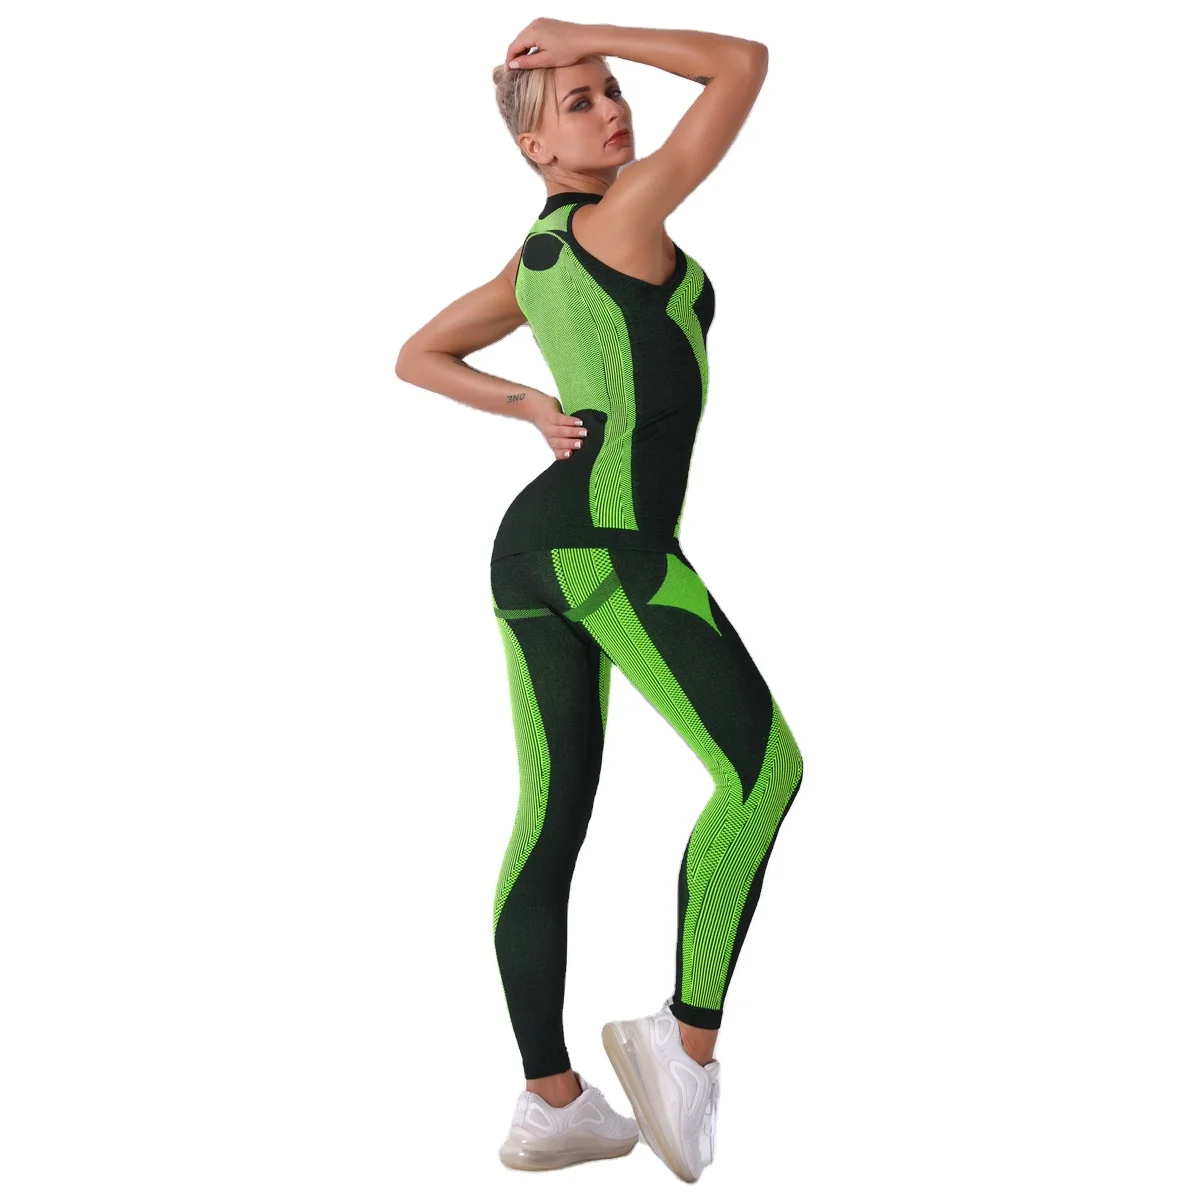 2PCS/Set Women Tracksuit Sports Wear Sleeveless Vest Pants Yoga Gym Sport Suit